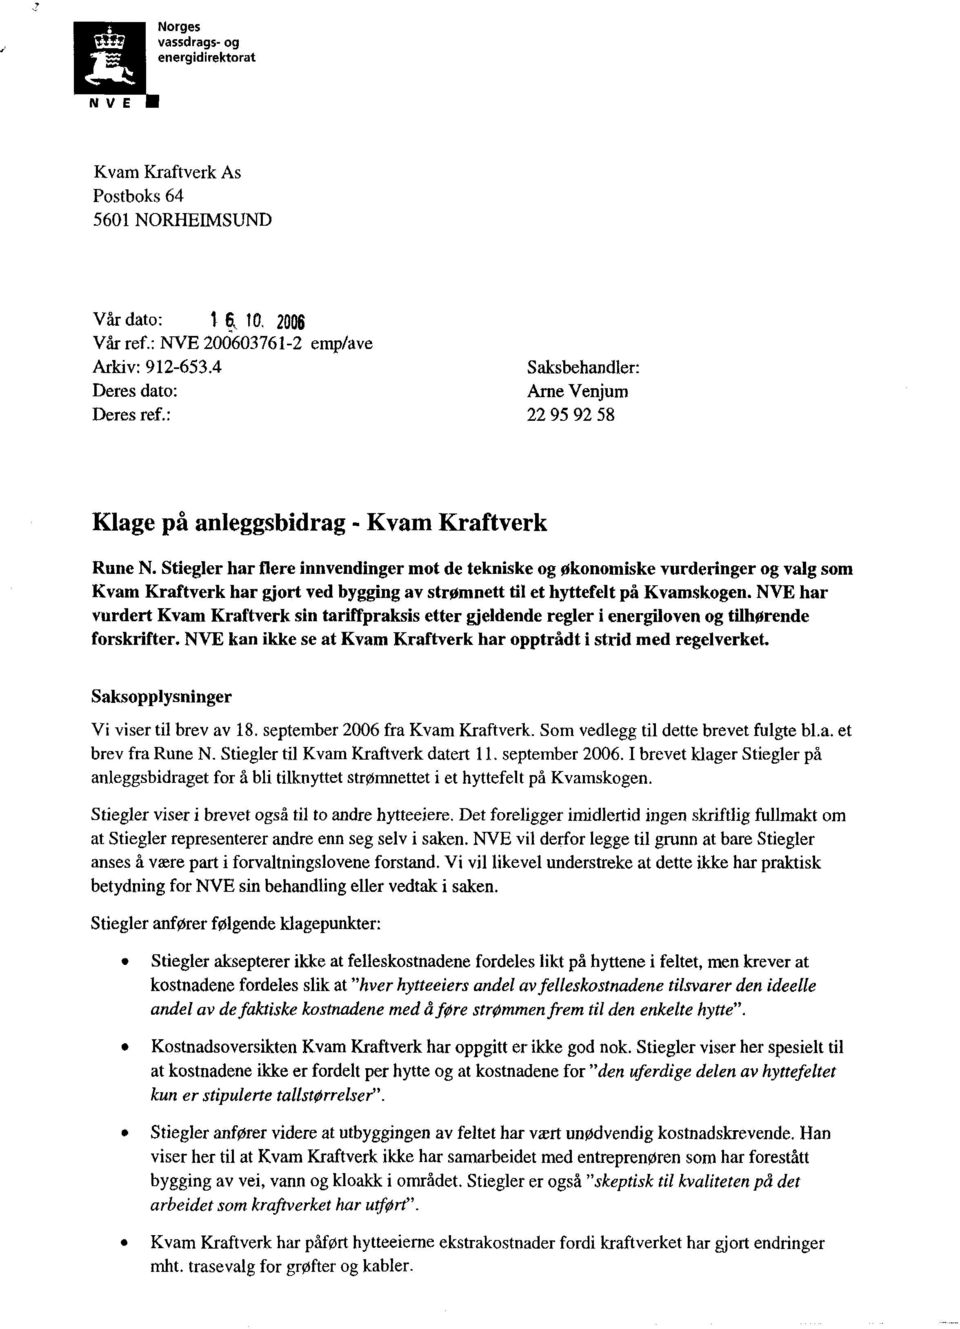 Stiegler har flere innvendinger mot de tekniske og Økonomiske vurderinger og valg som Kvam Kraftverk har gjort ved bygging av strømnett til et hyttefelt på Kvamskogen.